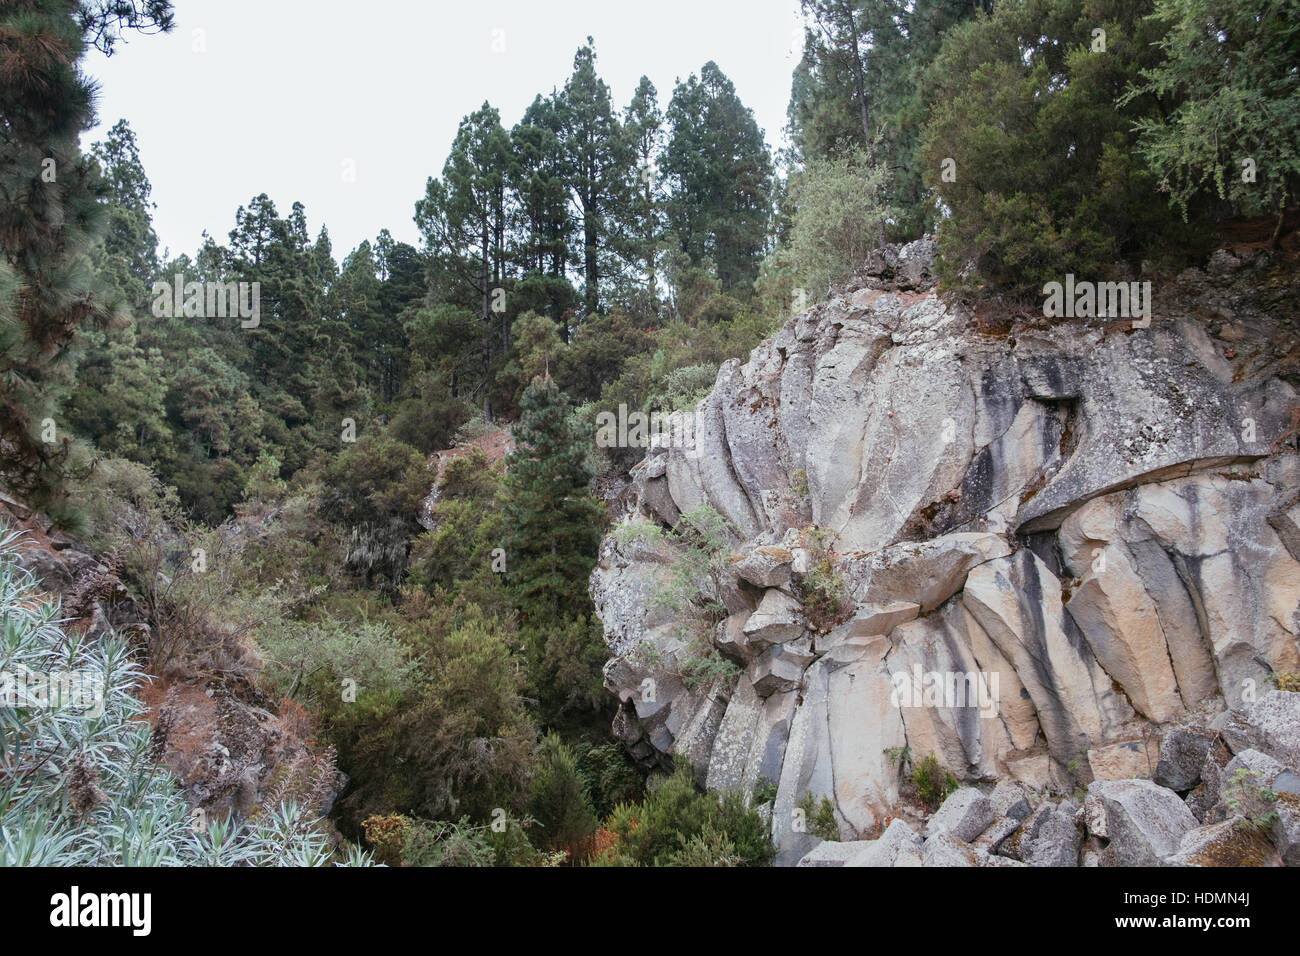 Geological formation at Parque Natural, Corona Forestal , Mirador de la Piedra de la Rosa, Tenerife, Canary Islands, Spain Stock Photo